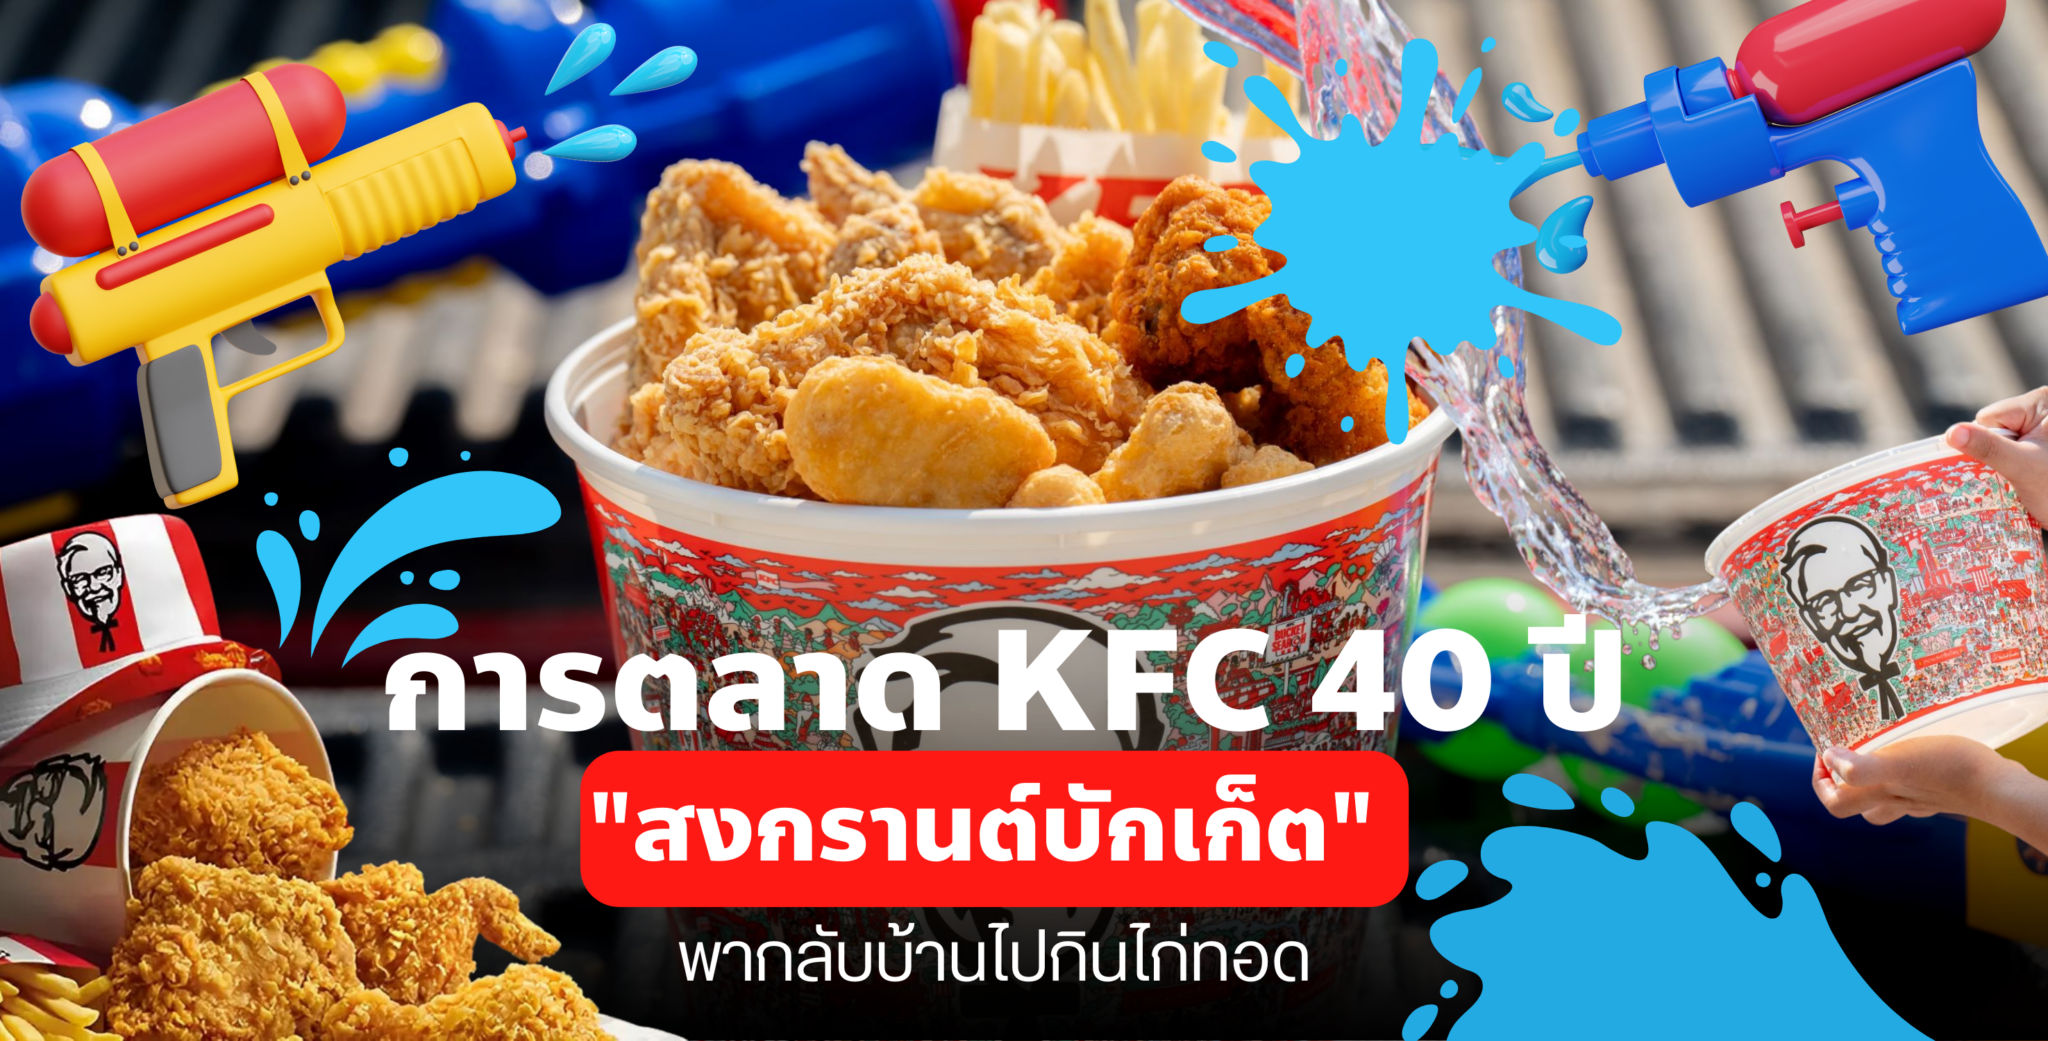 การตลาด KFC 40 ปี “สงกรานต์บักเก็ต” พากลับบ้านไปกินไก่ทอด